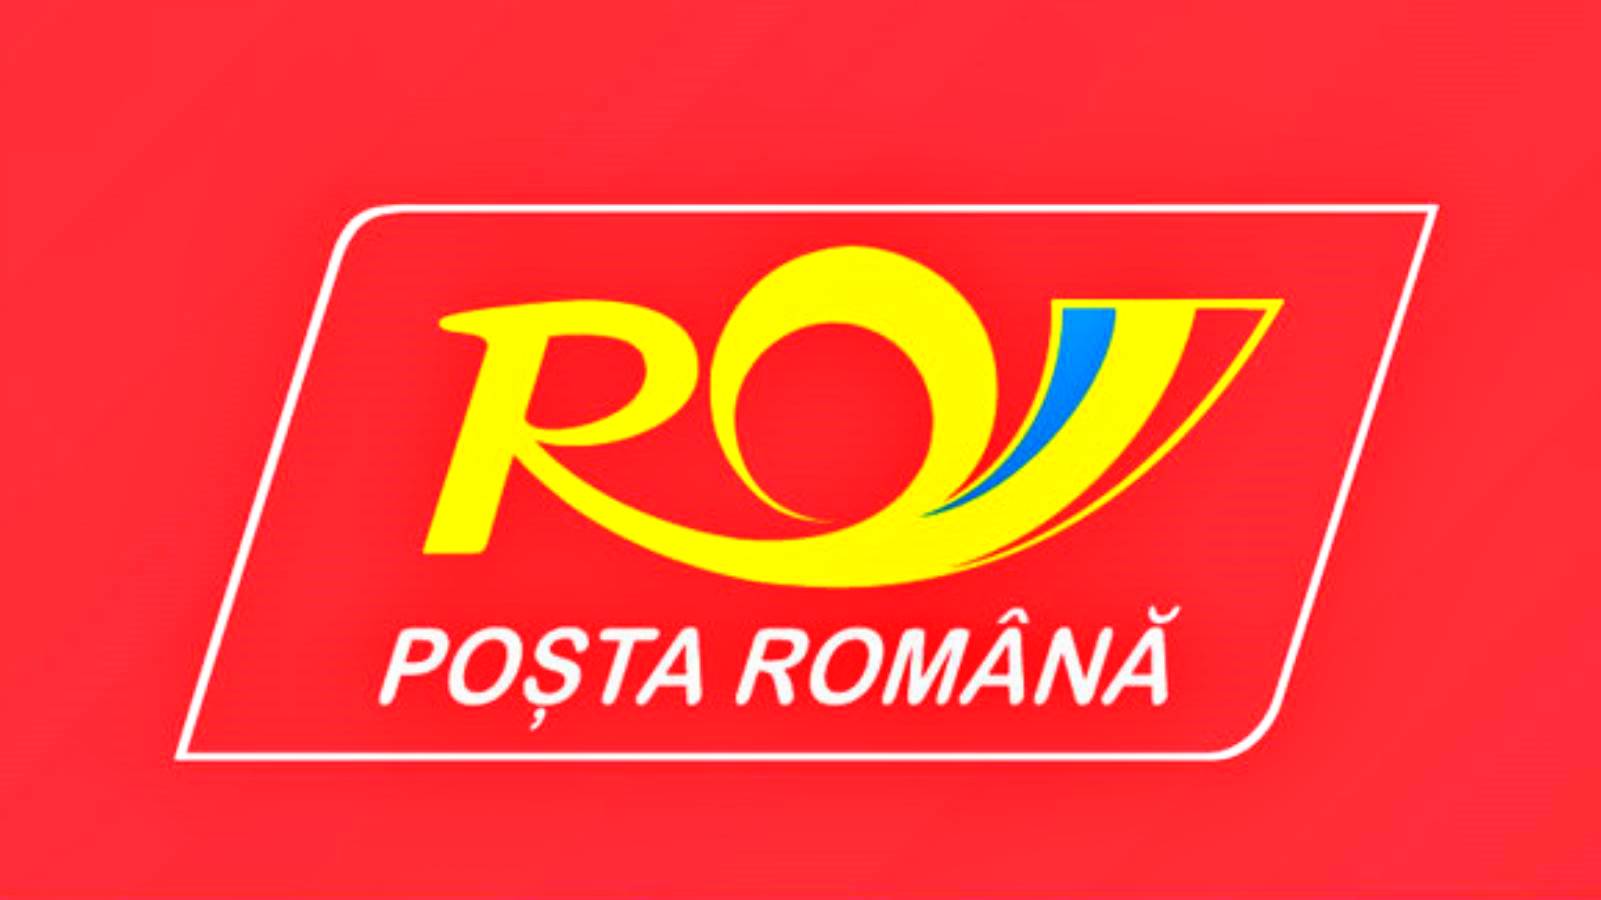 Versandkostenrechner der rumänischen Post